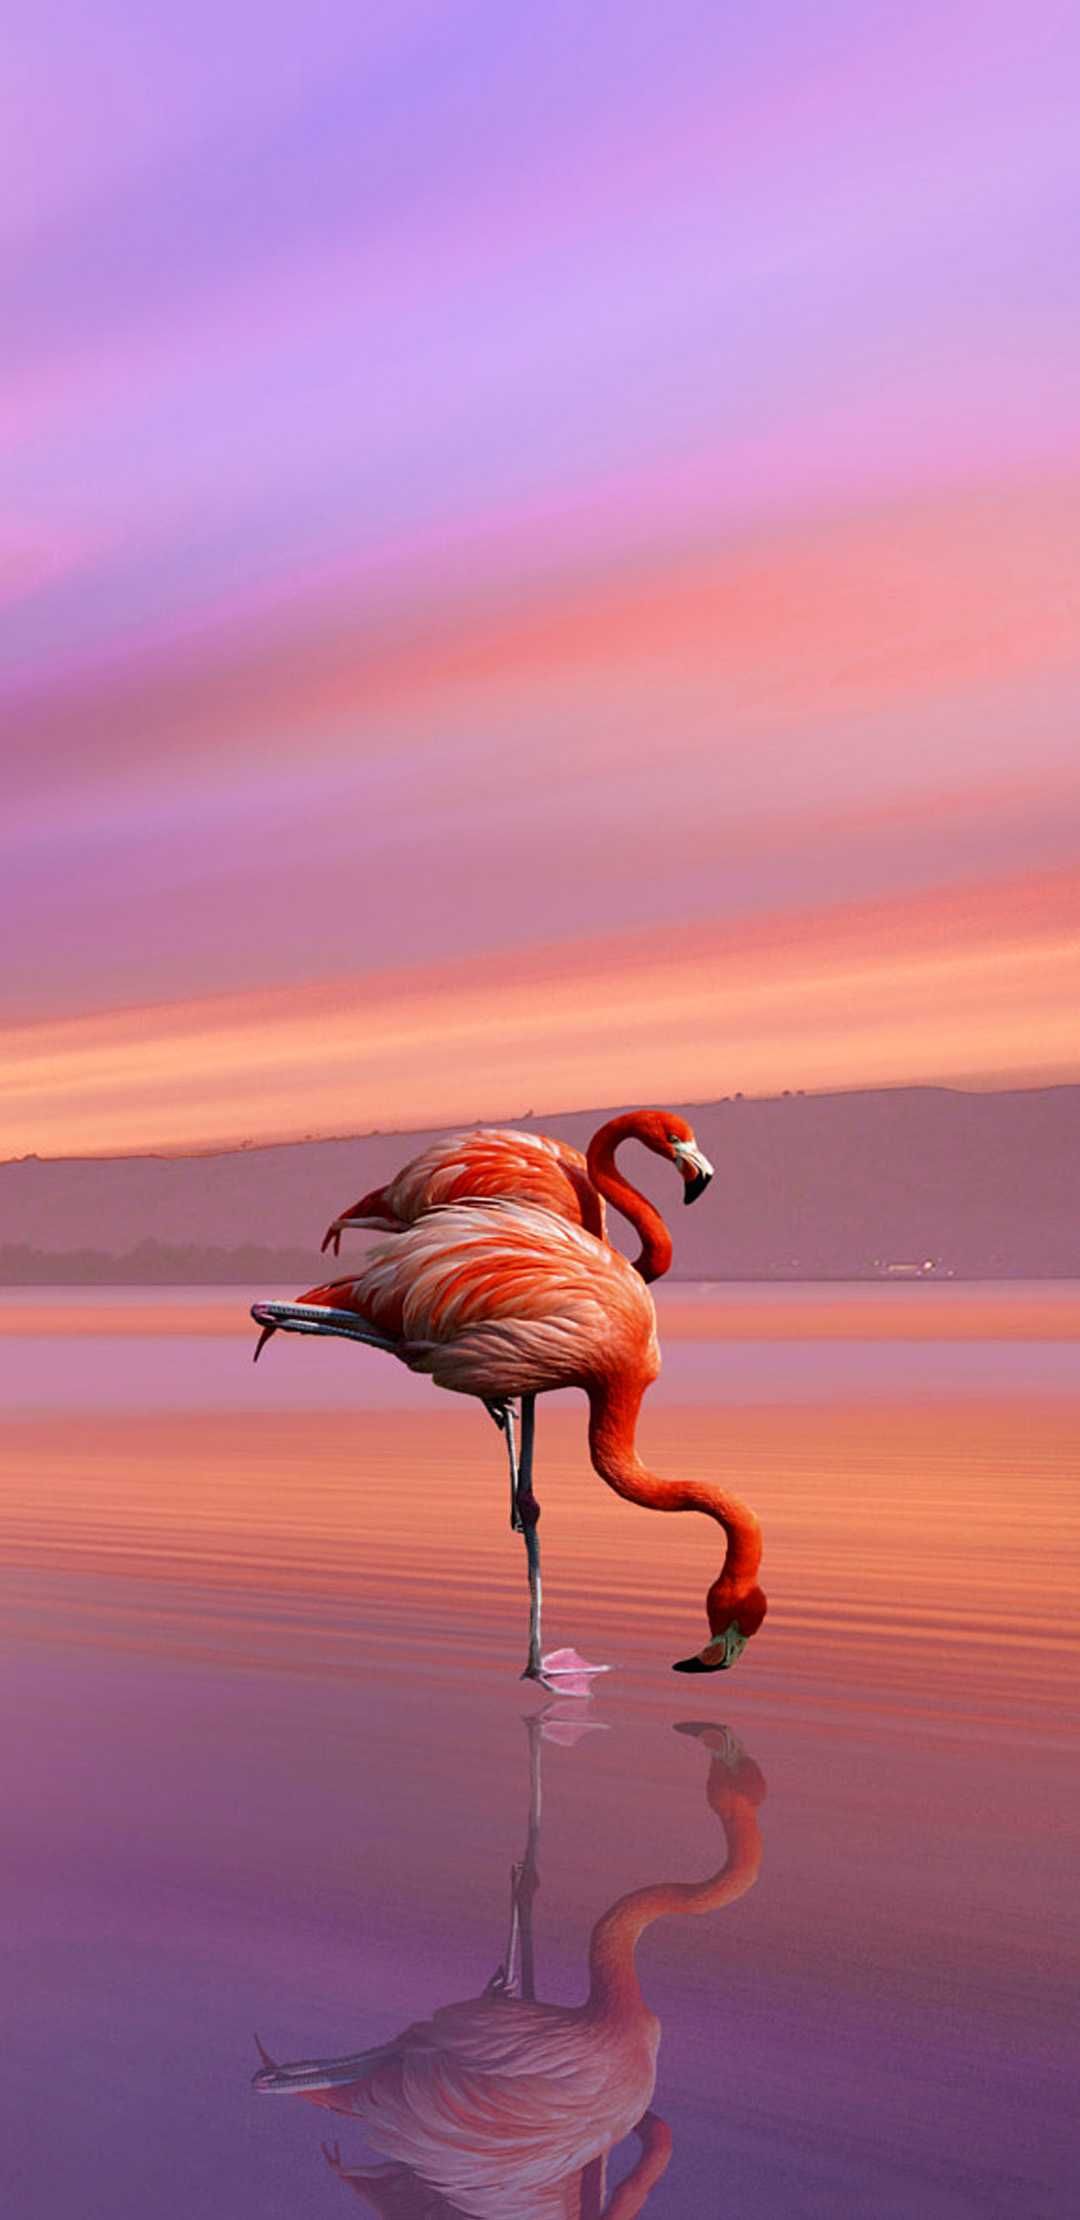 Flamingo Wallpaper Discover More Flamingo, Pastel, Sunset Wallpaper. /flamingo Wallpaper/. Flamingo Wallpaper, Sunset Wallpaper, Wallpaper